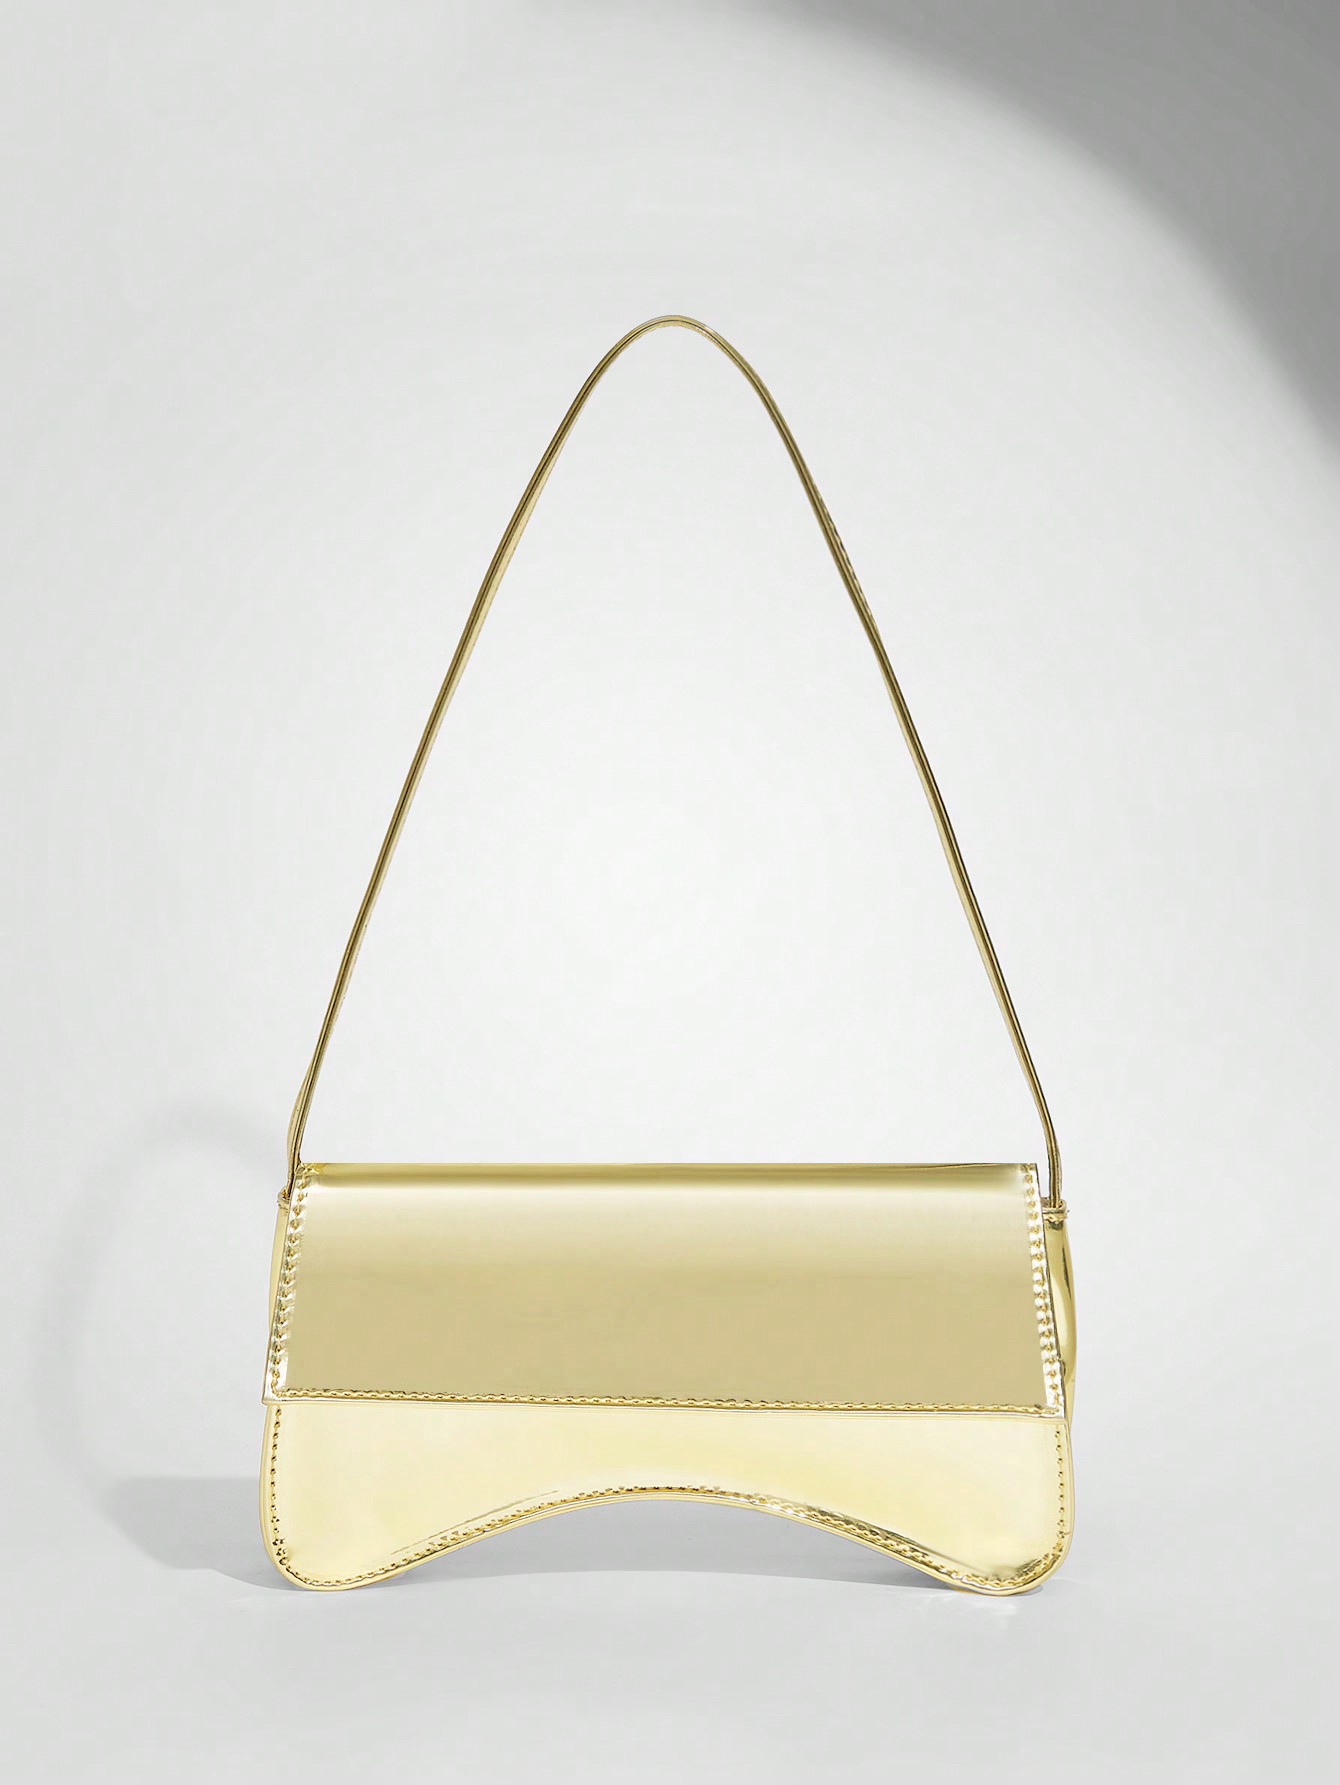 SHEIN BAE Женская модная индивидуальная блестящая сумка-хобо из искусственной кожи золотого цвета с эффектом металлик, золото